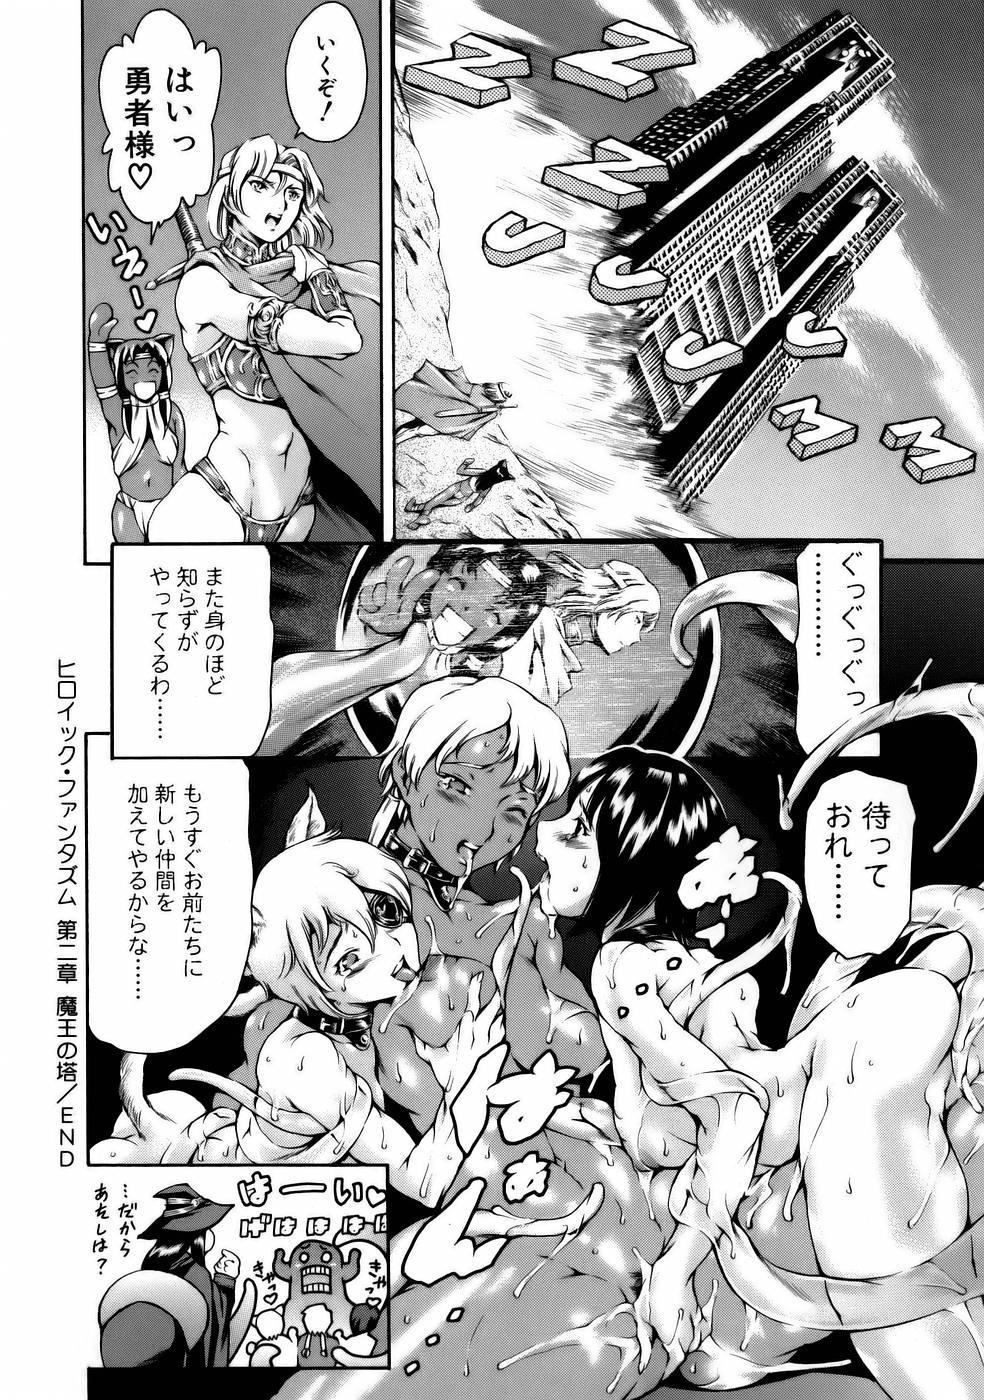 Manga Naze Nani Kyoushitsu 173